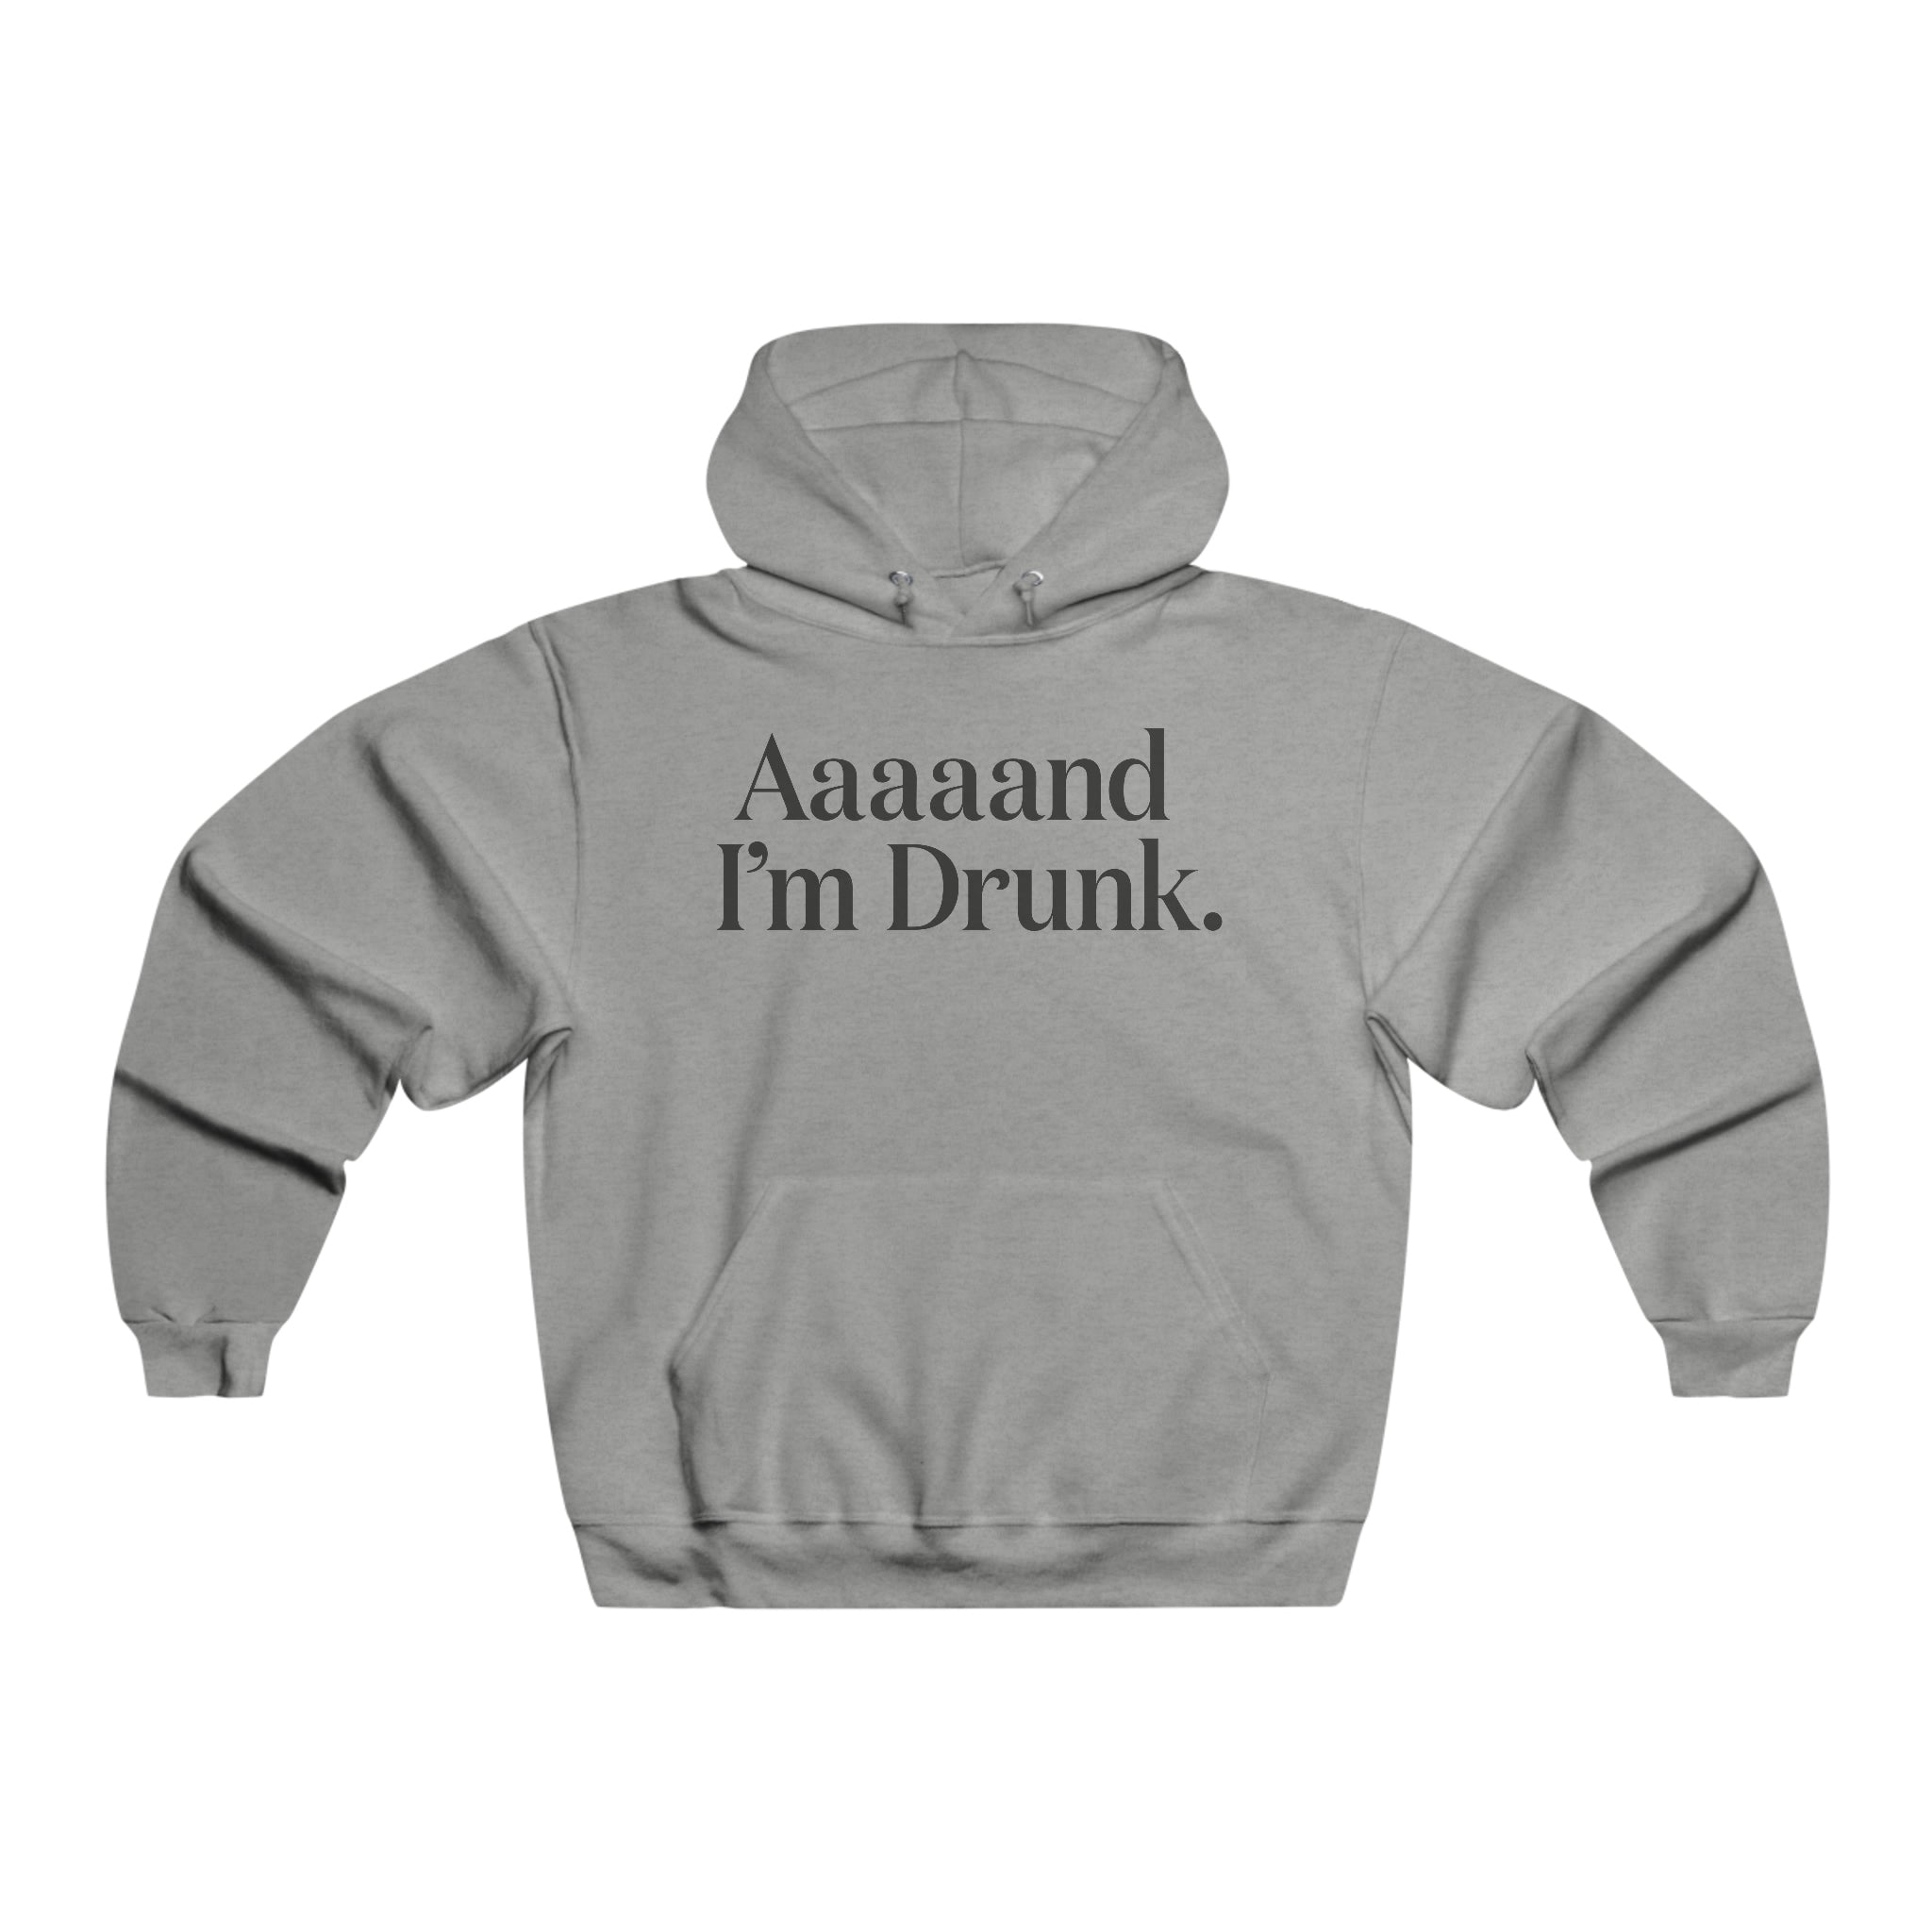 Aaaaand I'm Drunk. - Men's NUBLEND® Hooded Sweatshirt